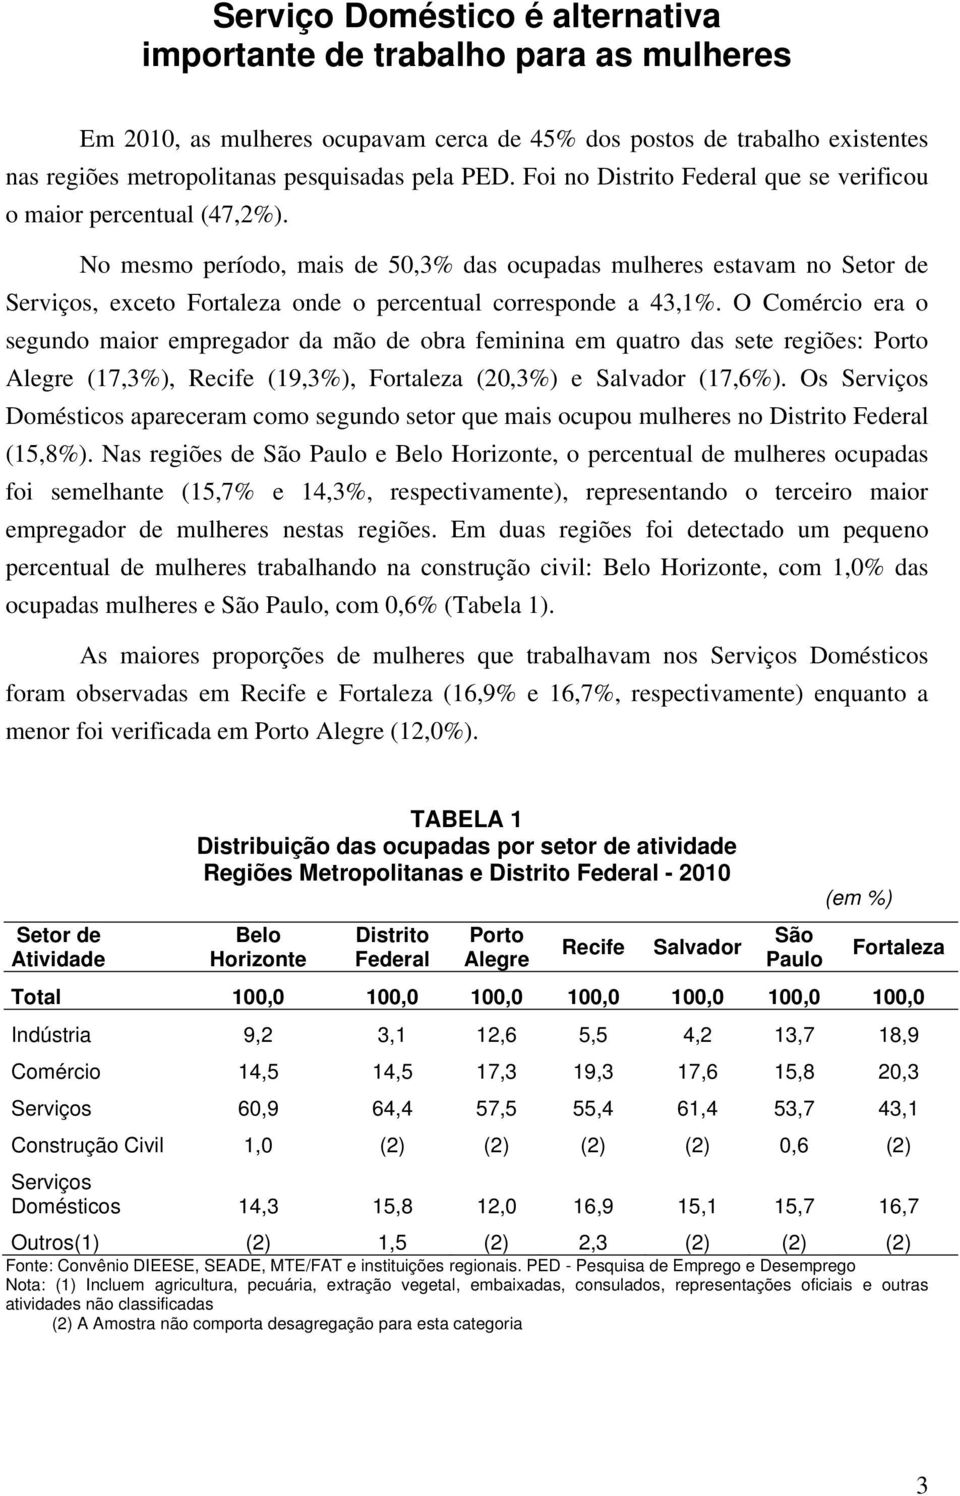 No mesmo período, mais de 50,3% das ocupadas mulheres estavam no Setor de Serviços, exceto Fortaleza onde o percentual corresponde a 43,1%.